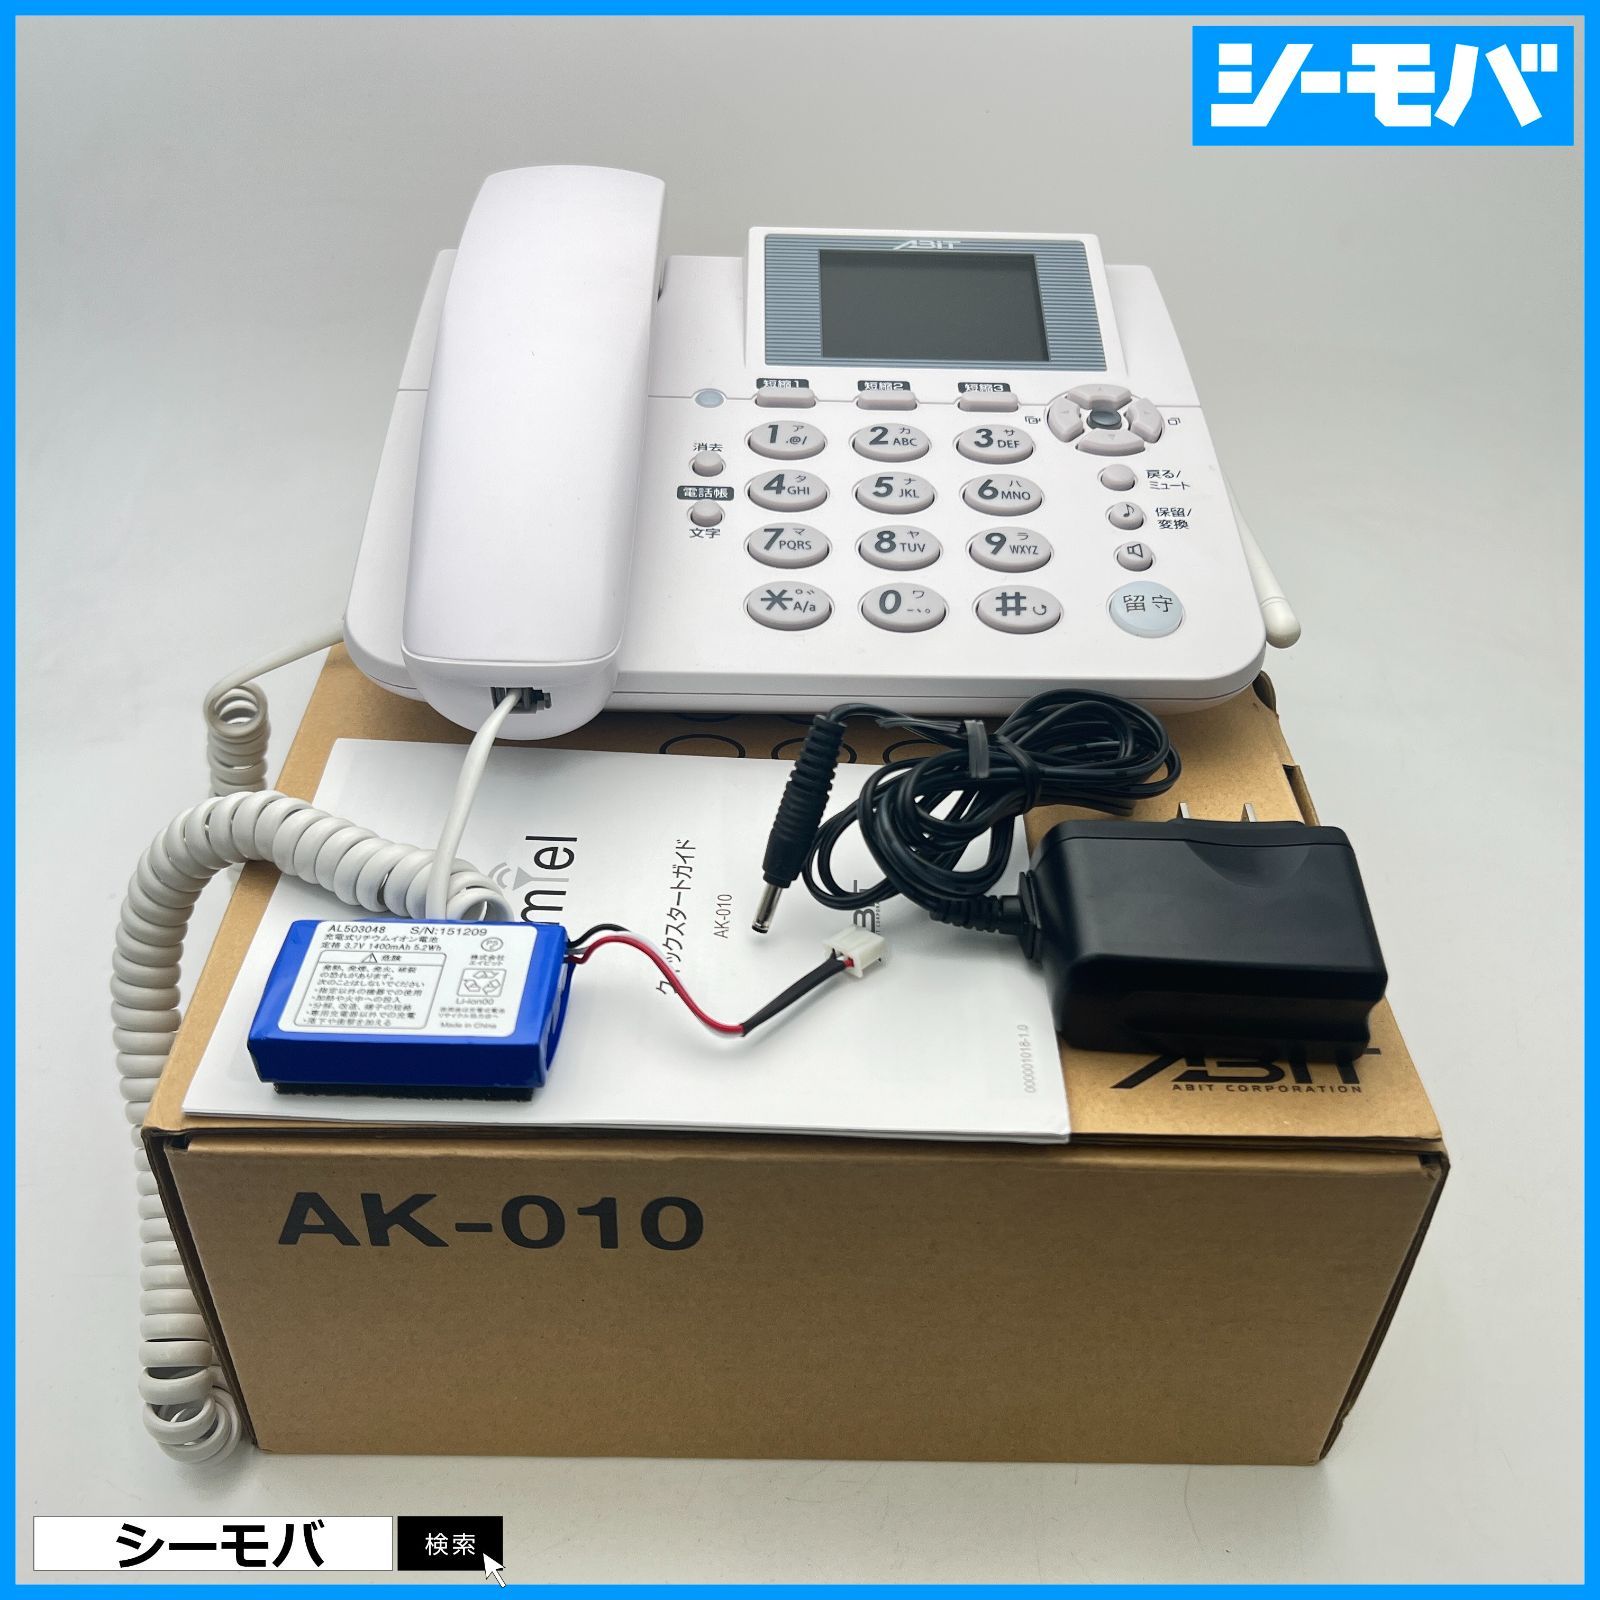 ホムテル3G AK-010 固定電話型SIMフリー電話機 - シーモバ Seegram